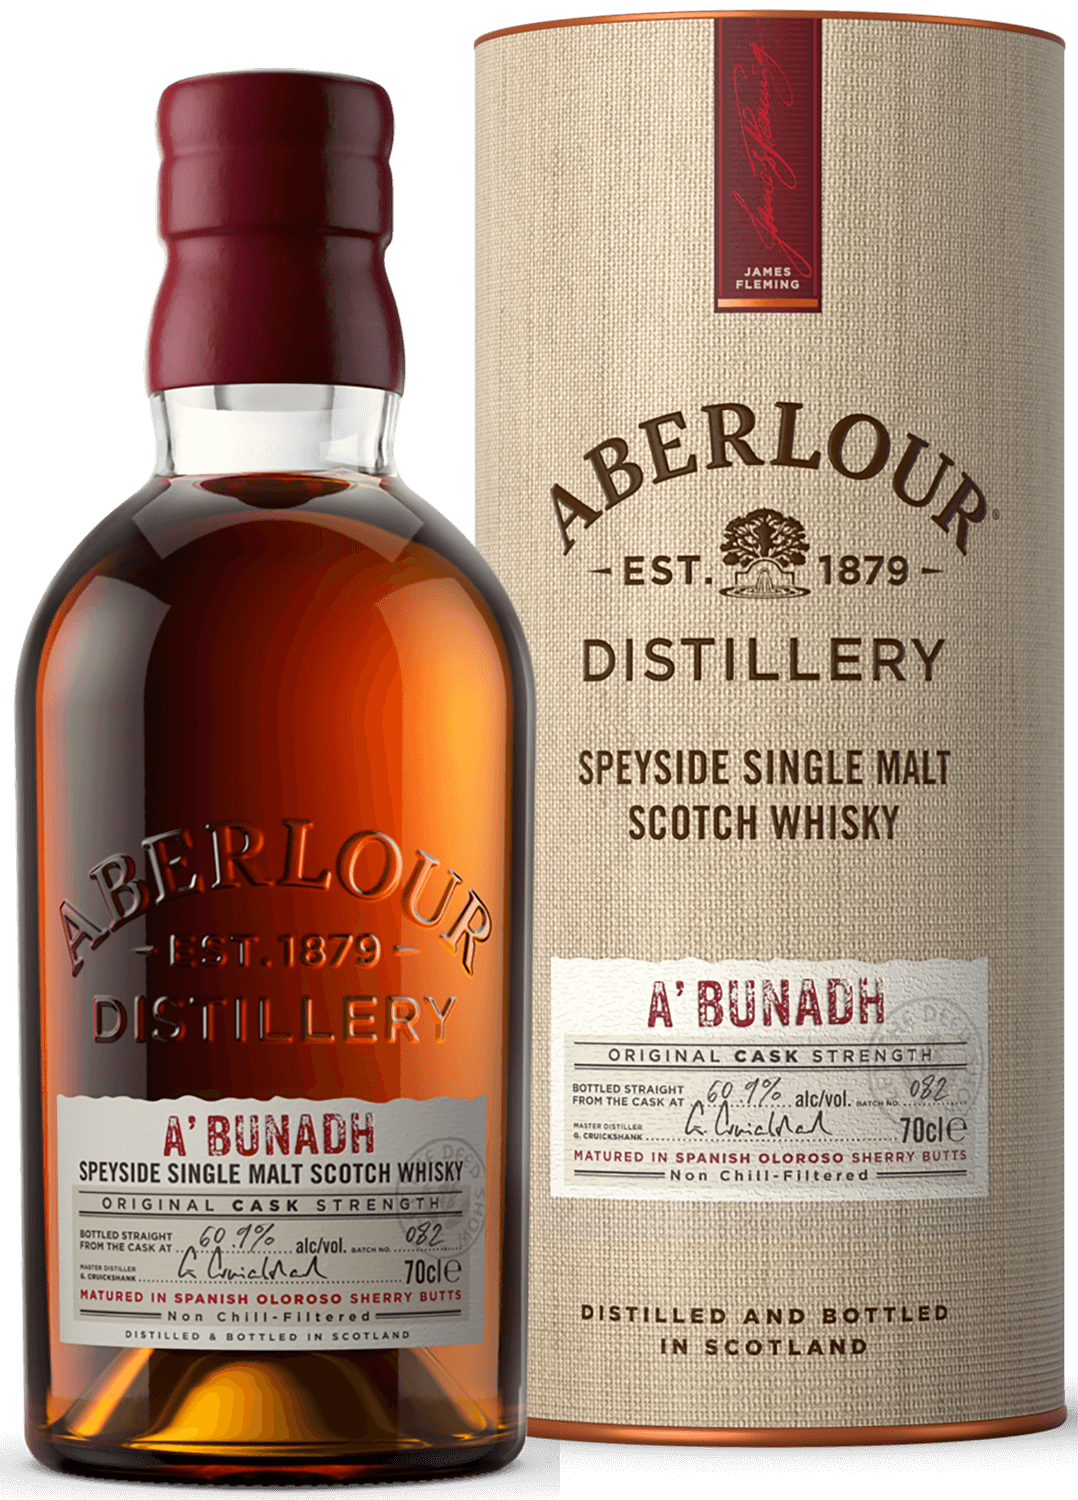 Aberlour A'bunadh Single Malt Scotch Whisky (gift box) speymhor single malt scotch whisky gift box